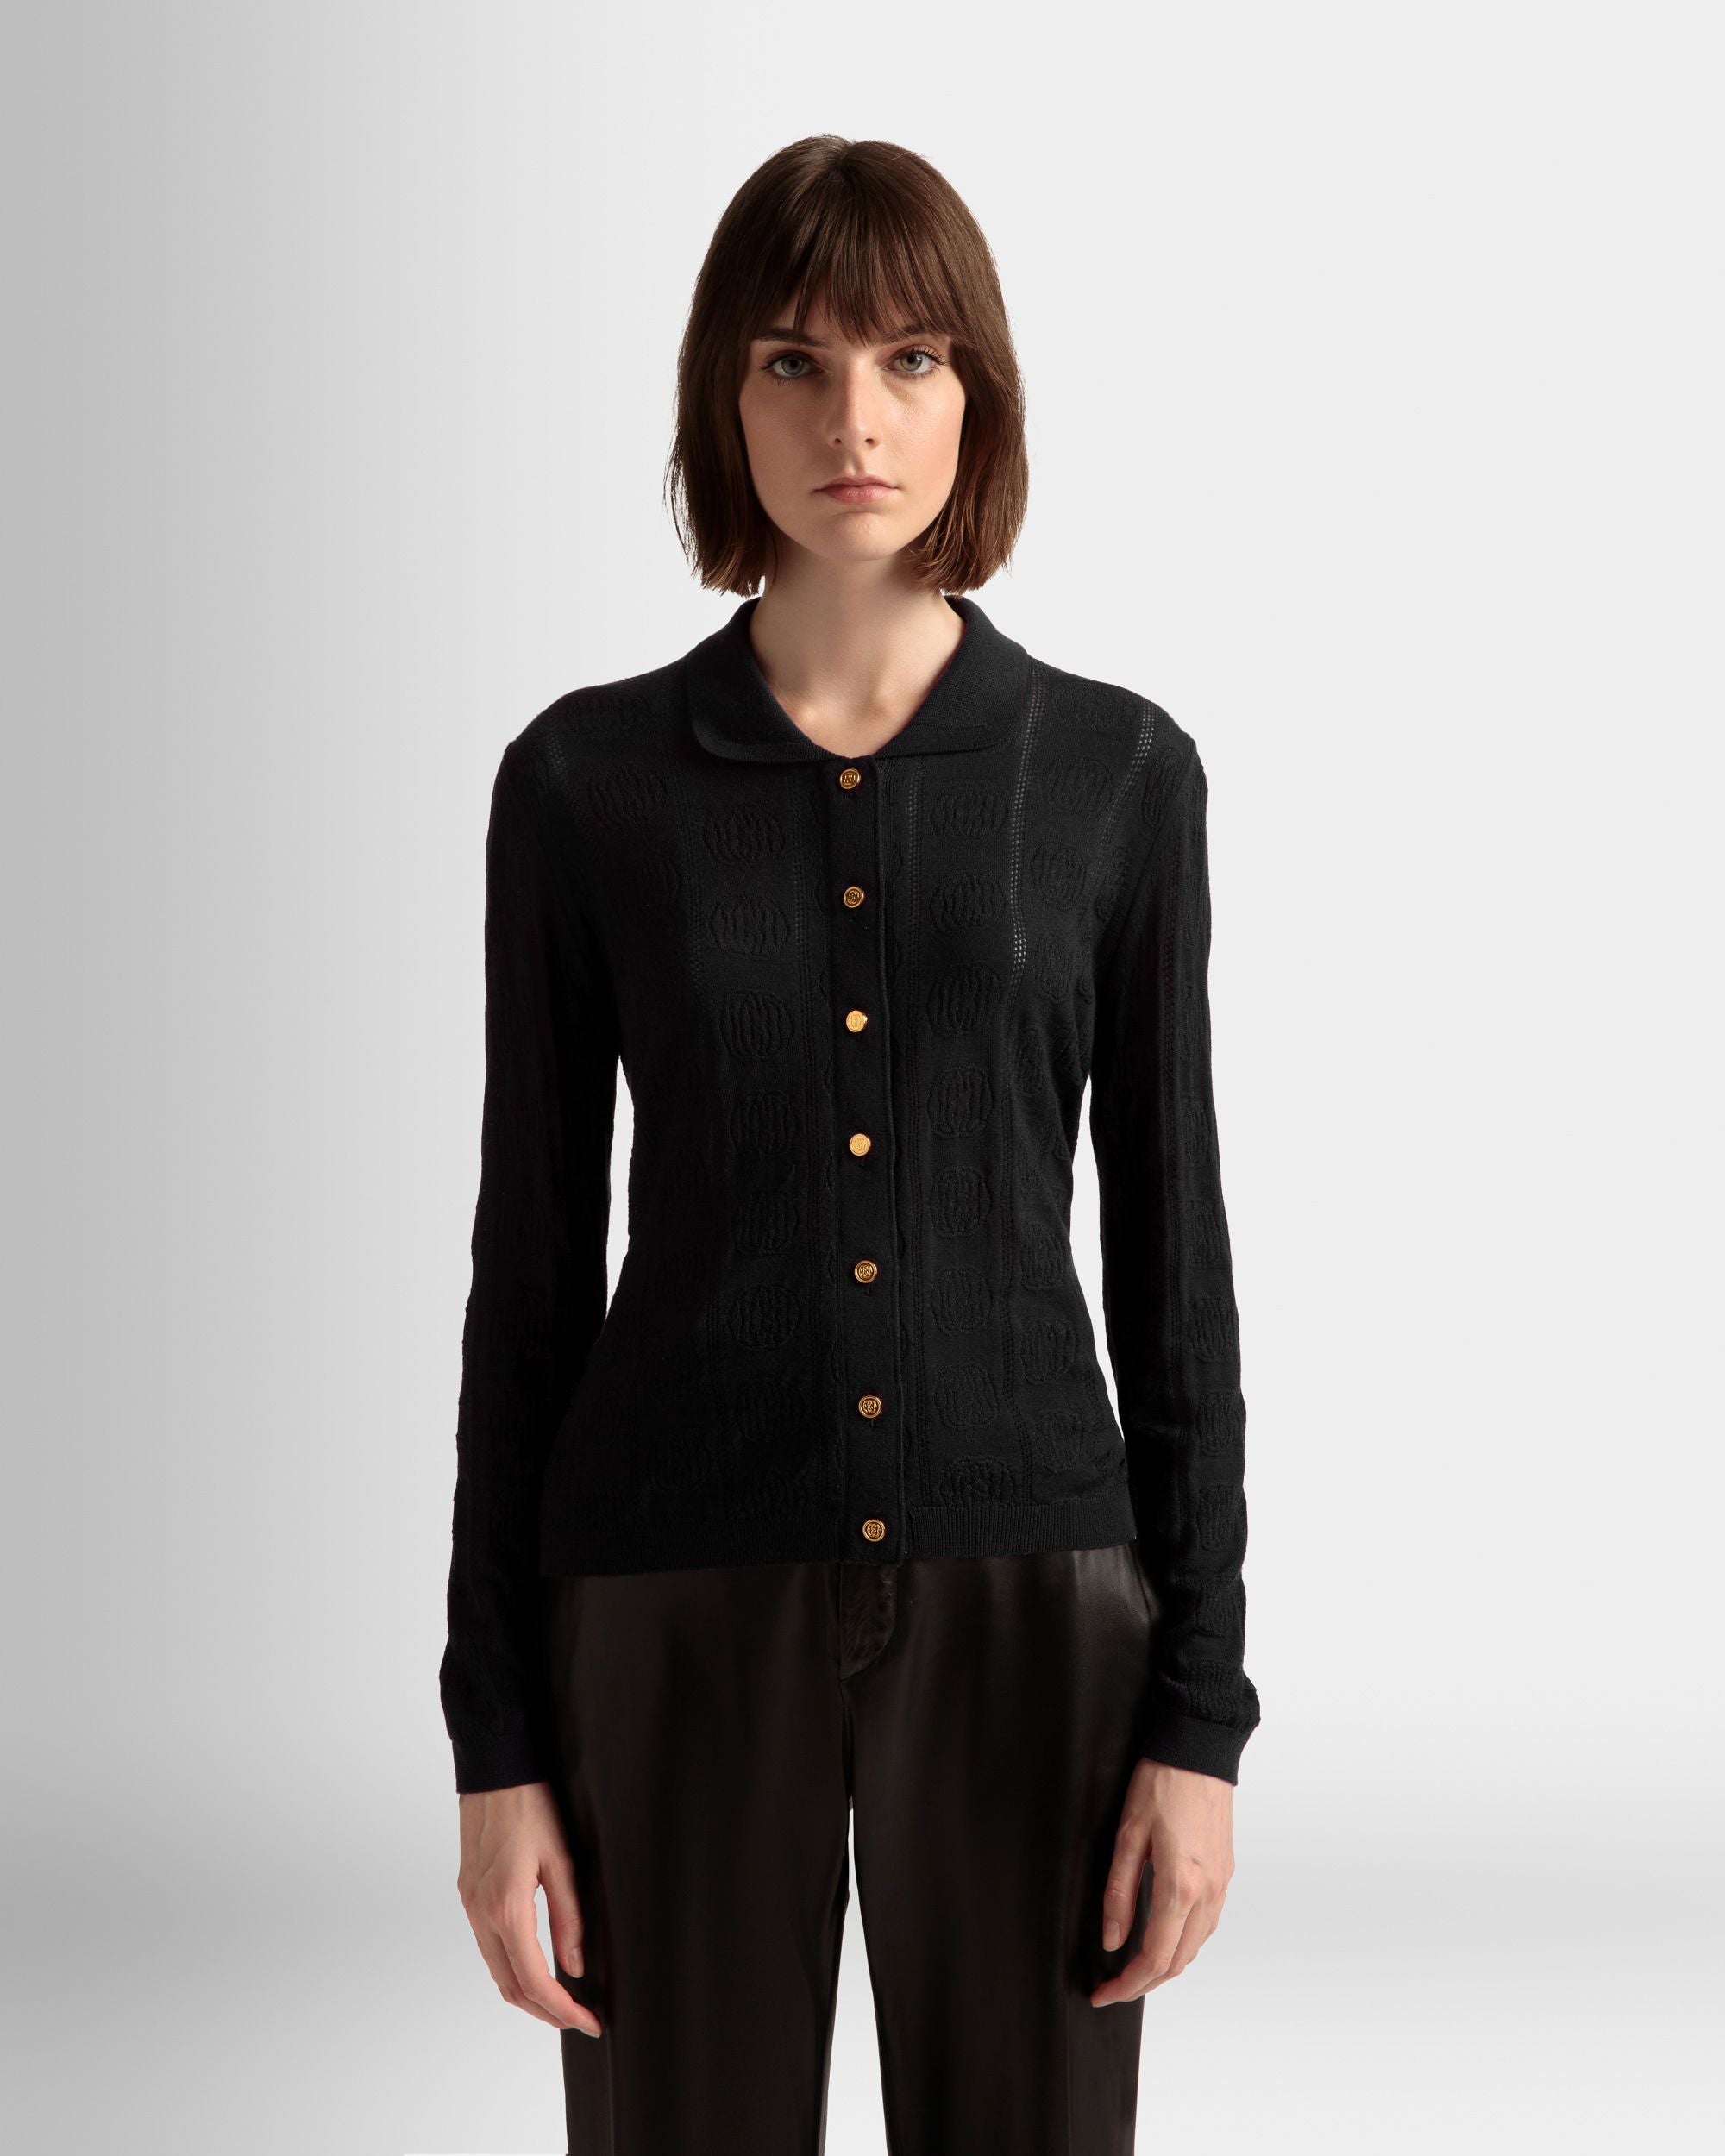 Langarm-Poloshirt mit Strickdetail | Poloshirt für Damen | Schwarze Wolle | Bally | Model getragen Nahaufnahme